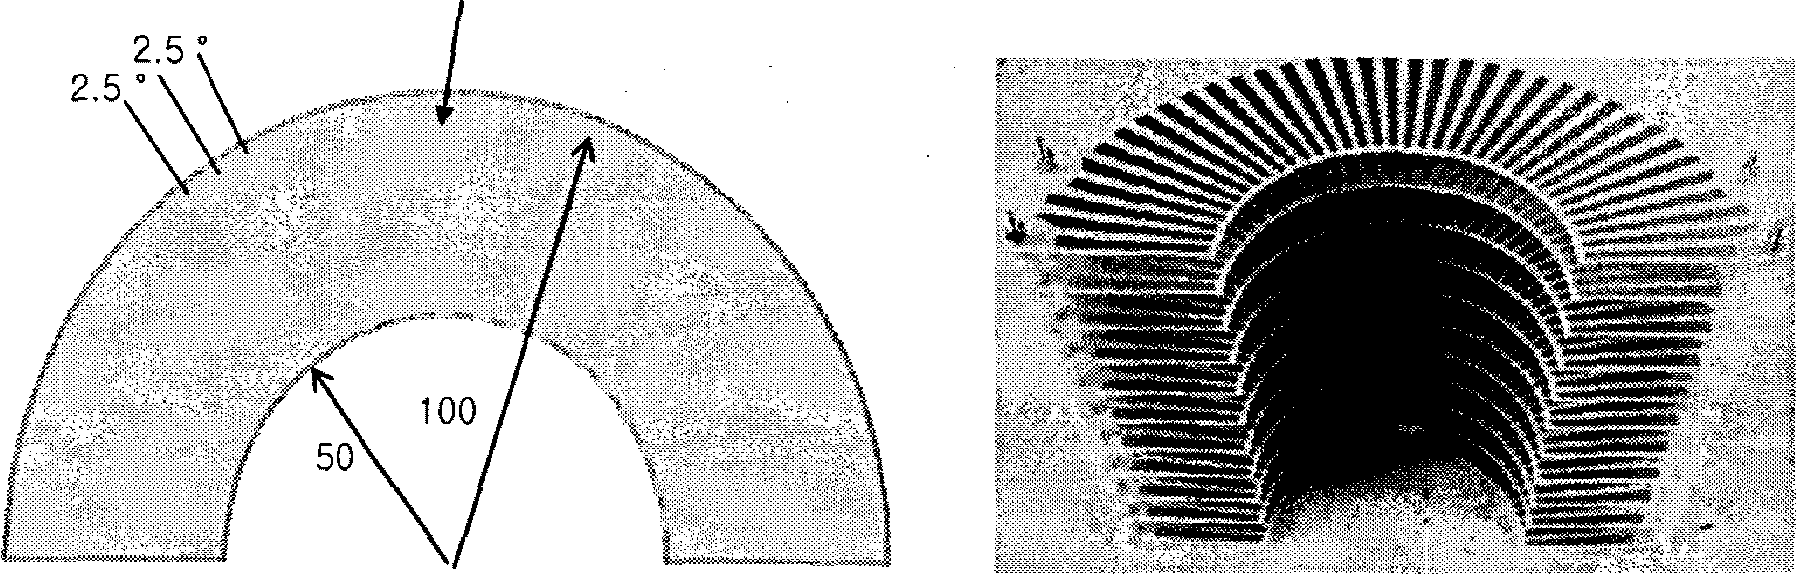 방사형 전파 렌즈 도면(a)과 실물 사진(b)